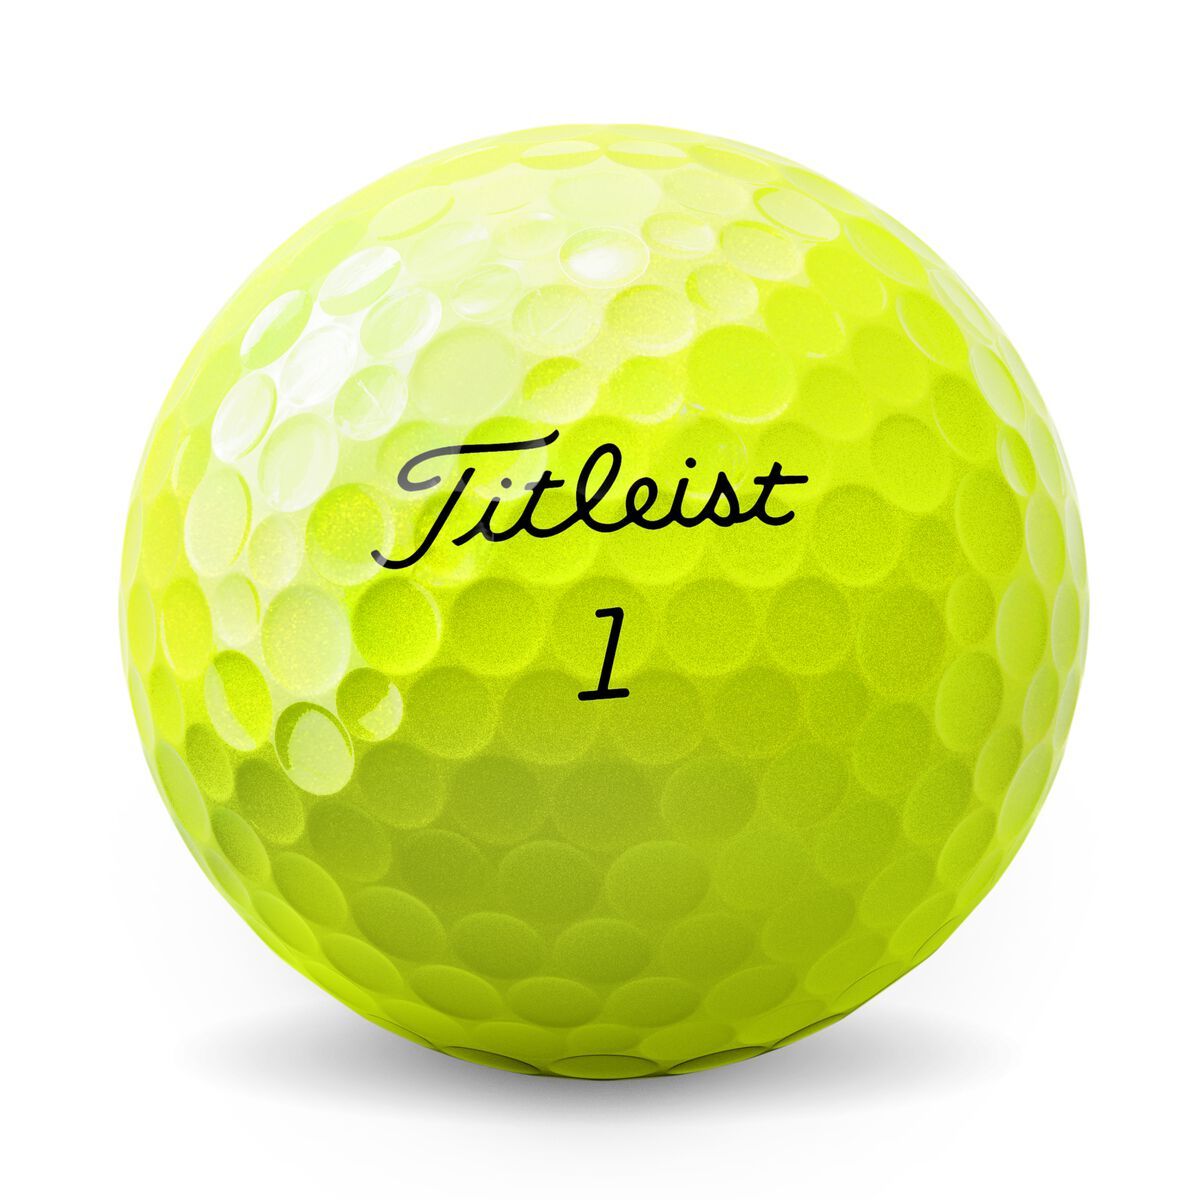 Titleist AVX Golf Balls 2023